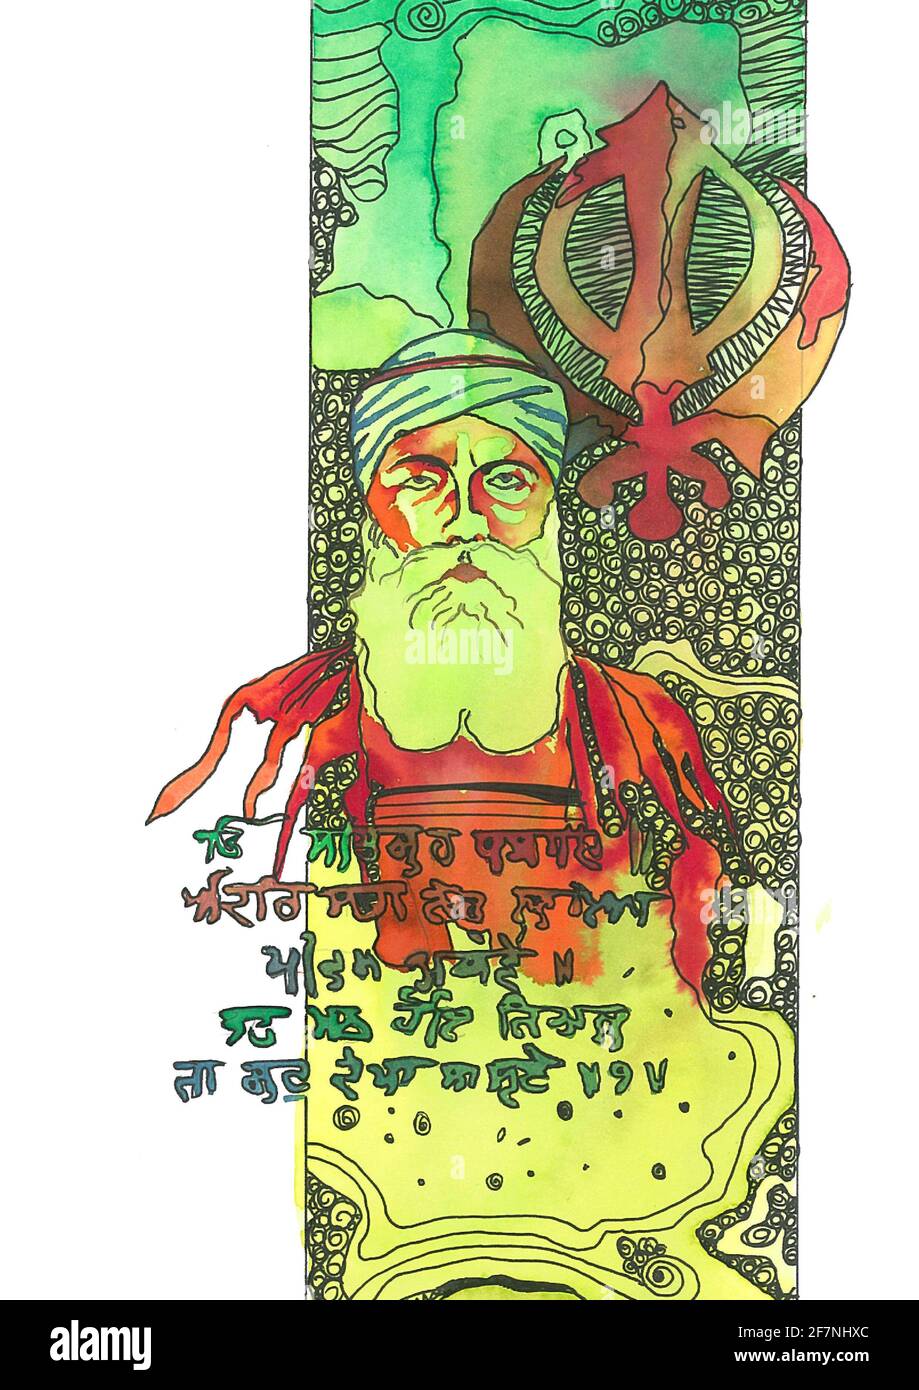 Illustration von Elementen des Sikh Festival Guru Gobind Singh Jayanti Handzeichnung Illustration für sikh punjabi amd amritsari Menschen Stockfoto